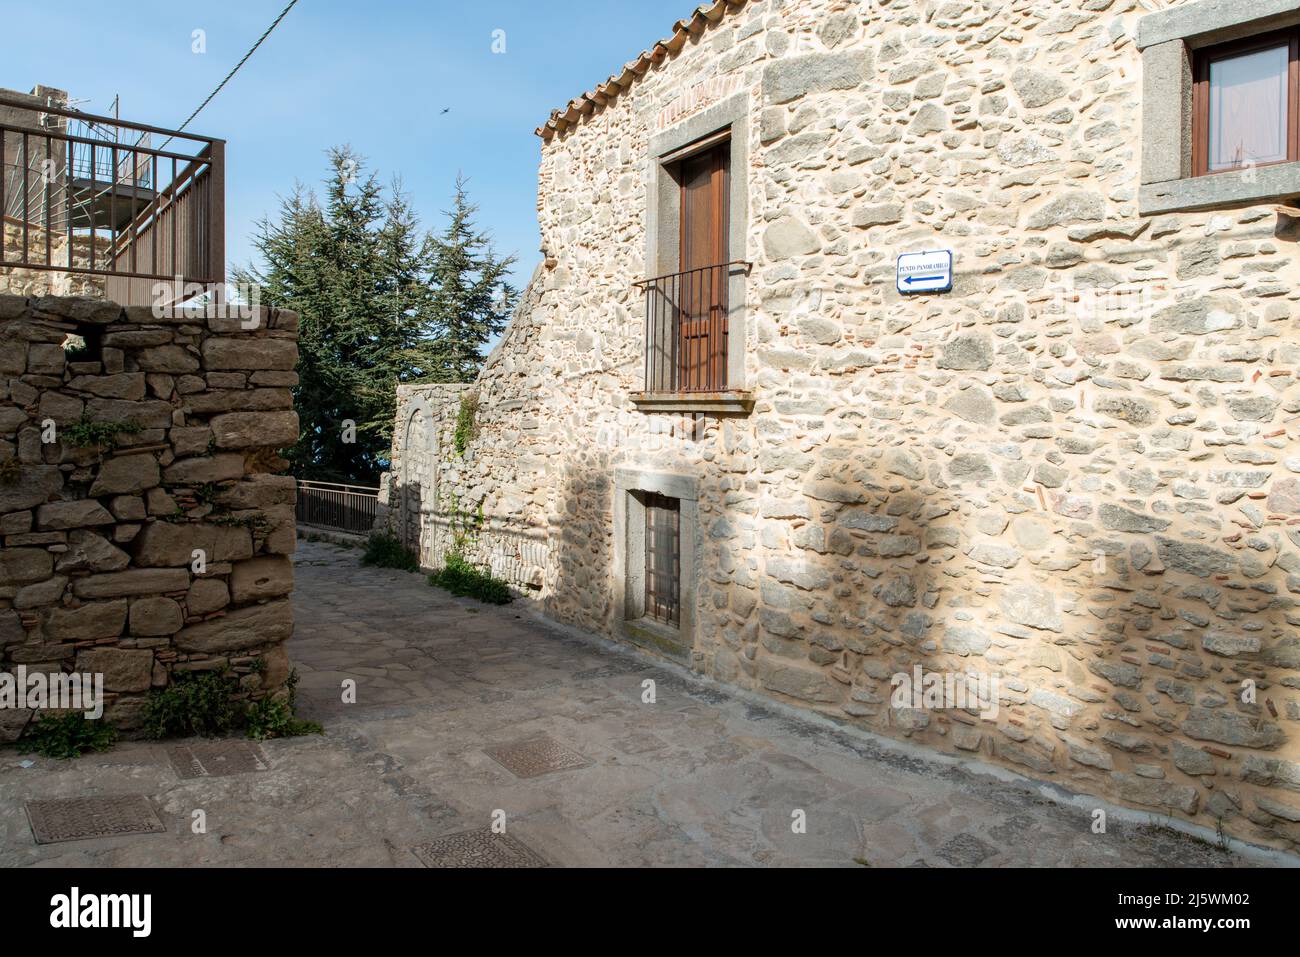 strade interne e costruzioni di Montalbano Elicona in provincia di Messina, borgo dei borghi 2015, splendido borgo medievale molto caratteristico Stock Photo